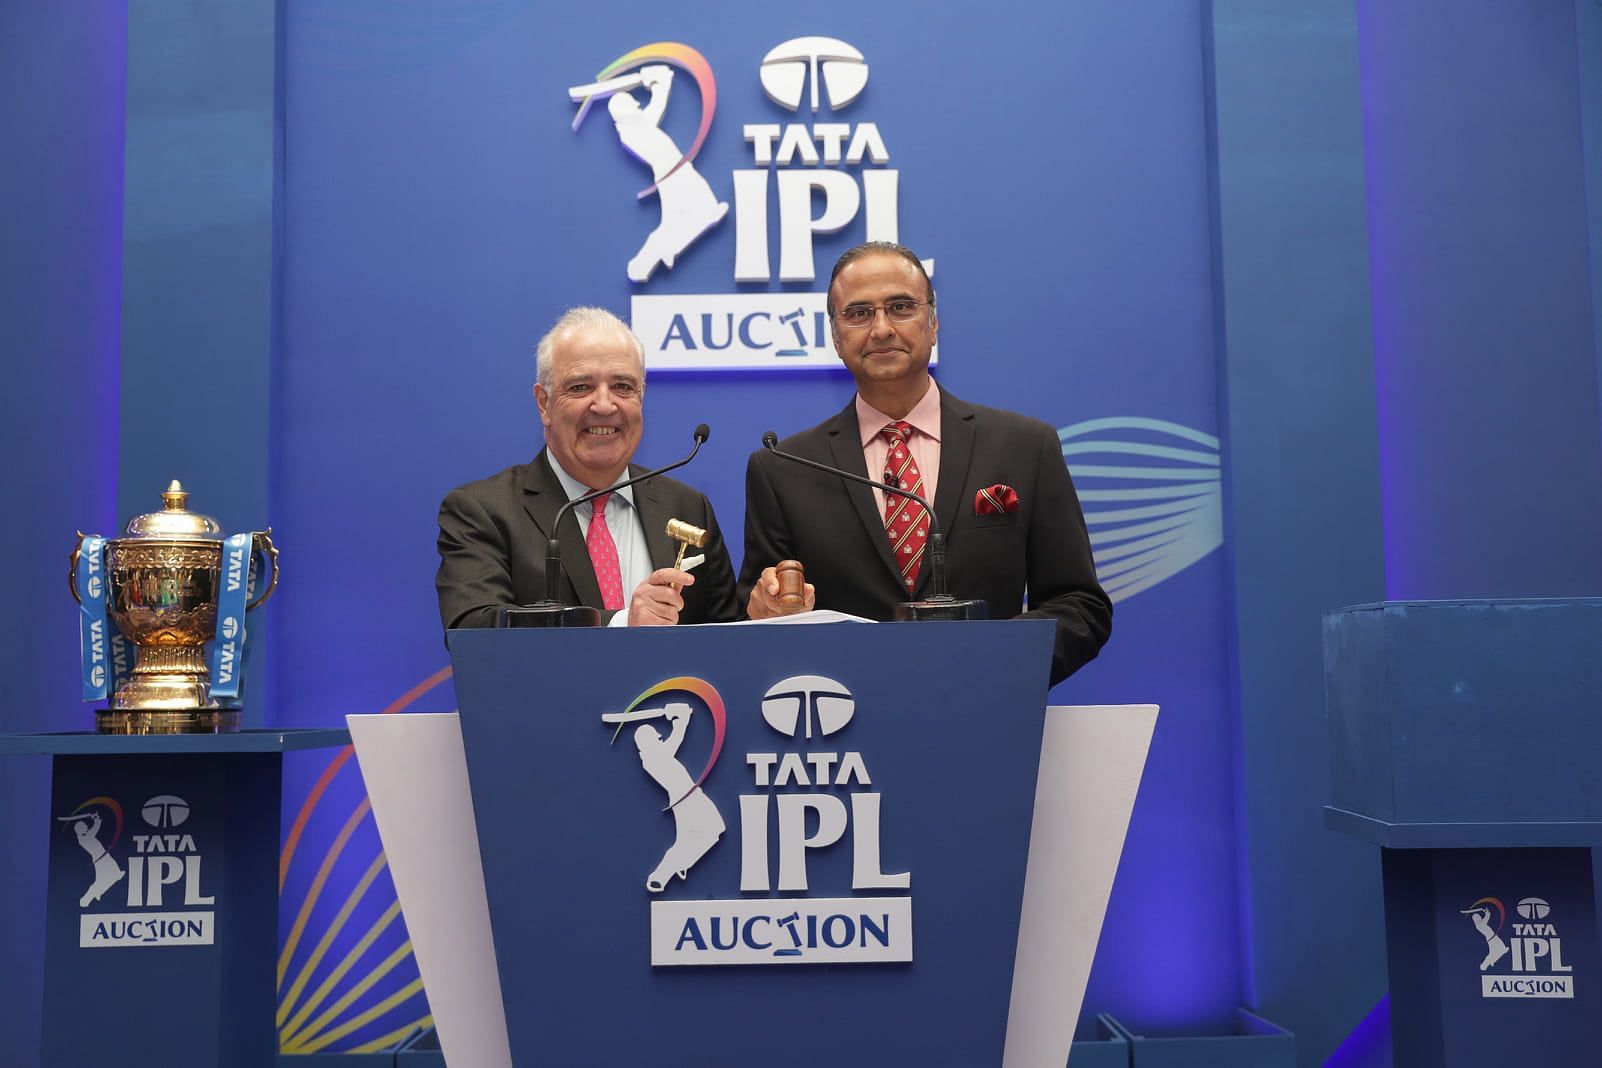 IPL auctioneers Hugh Edmeades and Charu Sharma (right) (Image via IPL)